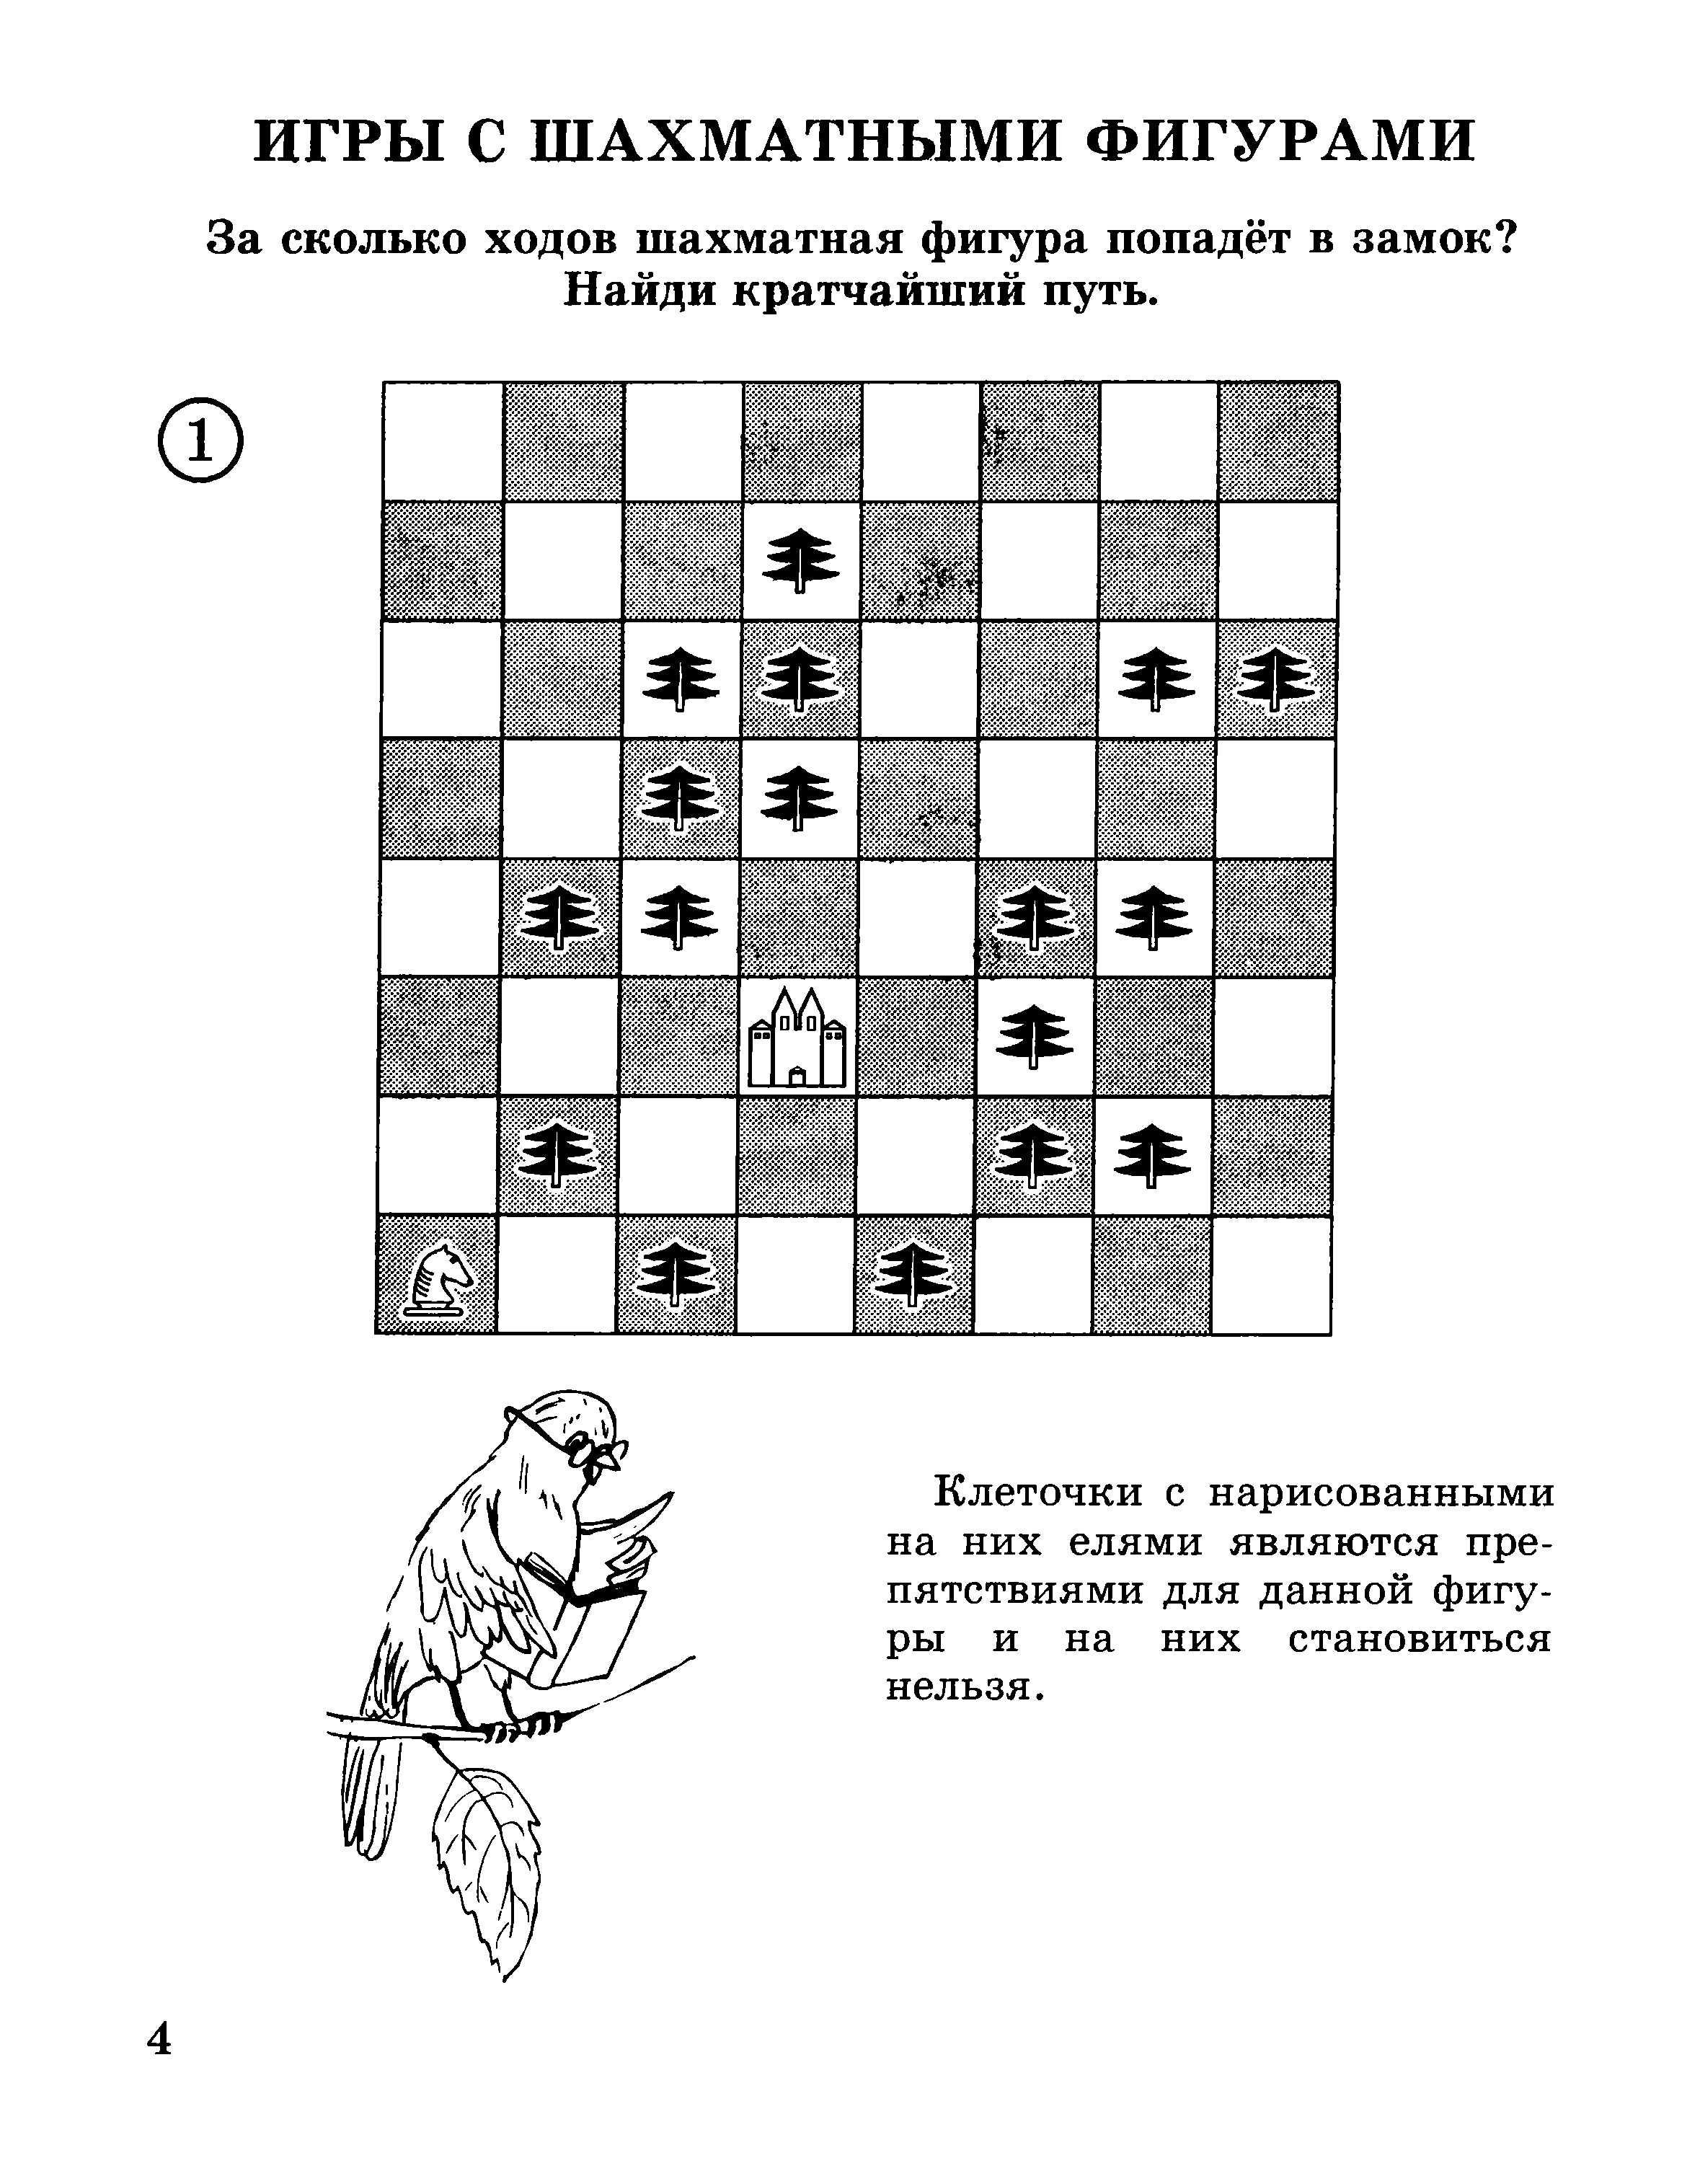 Задачи шахматы 1 год обучения. Задачи по шахматам для дошколят. Задание по шахматам для начинающих детей. Задачи по шахматам для детей 5 лет.